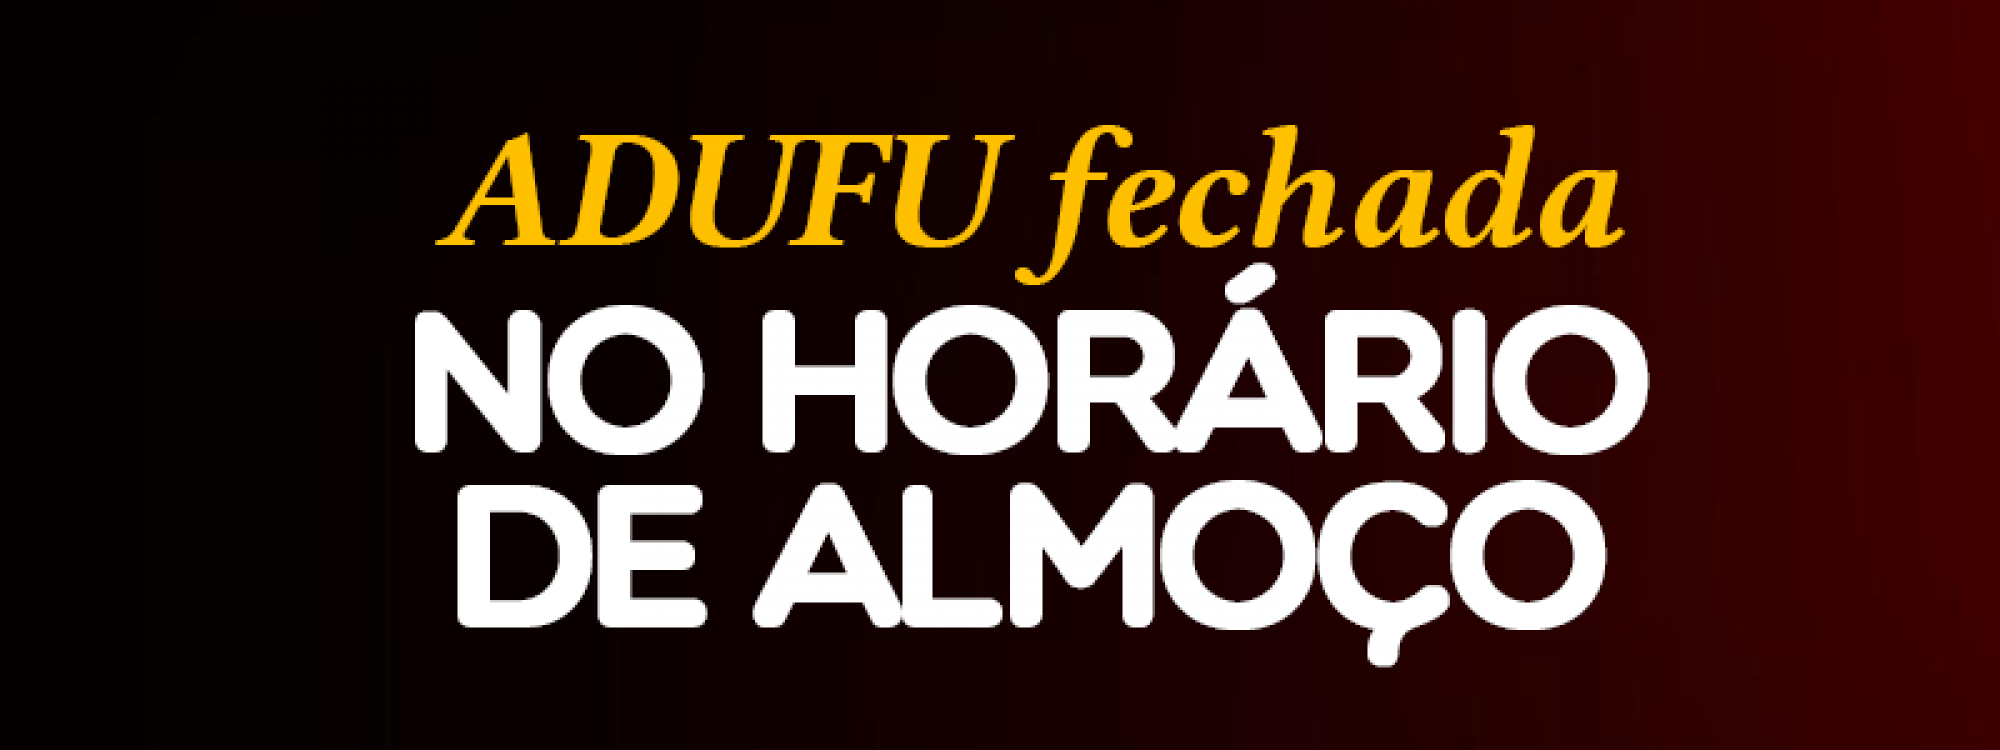 Comunicado: ADUFU fechada das 11h às 13h entre 06 de abril e 05 de maio de 2022